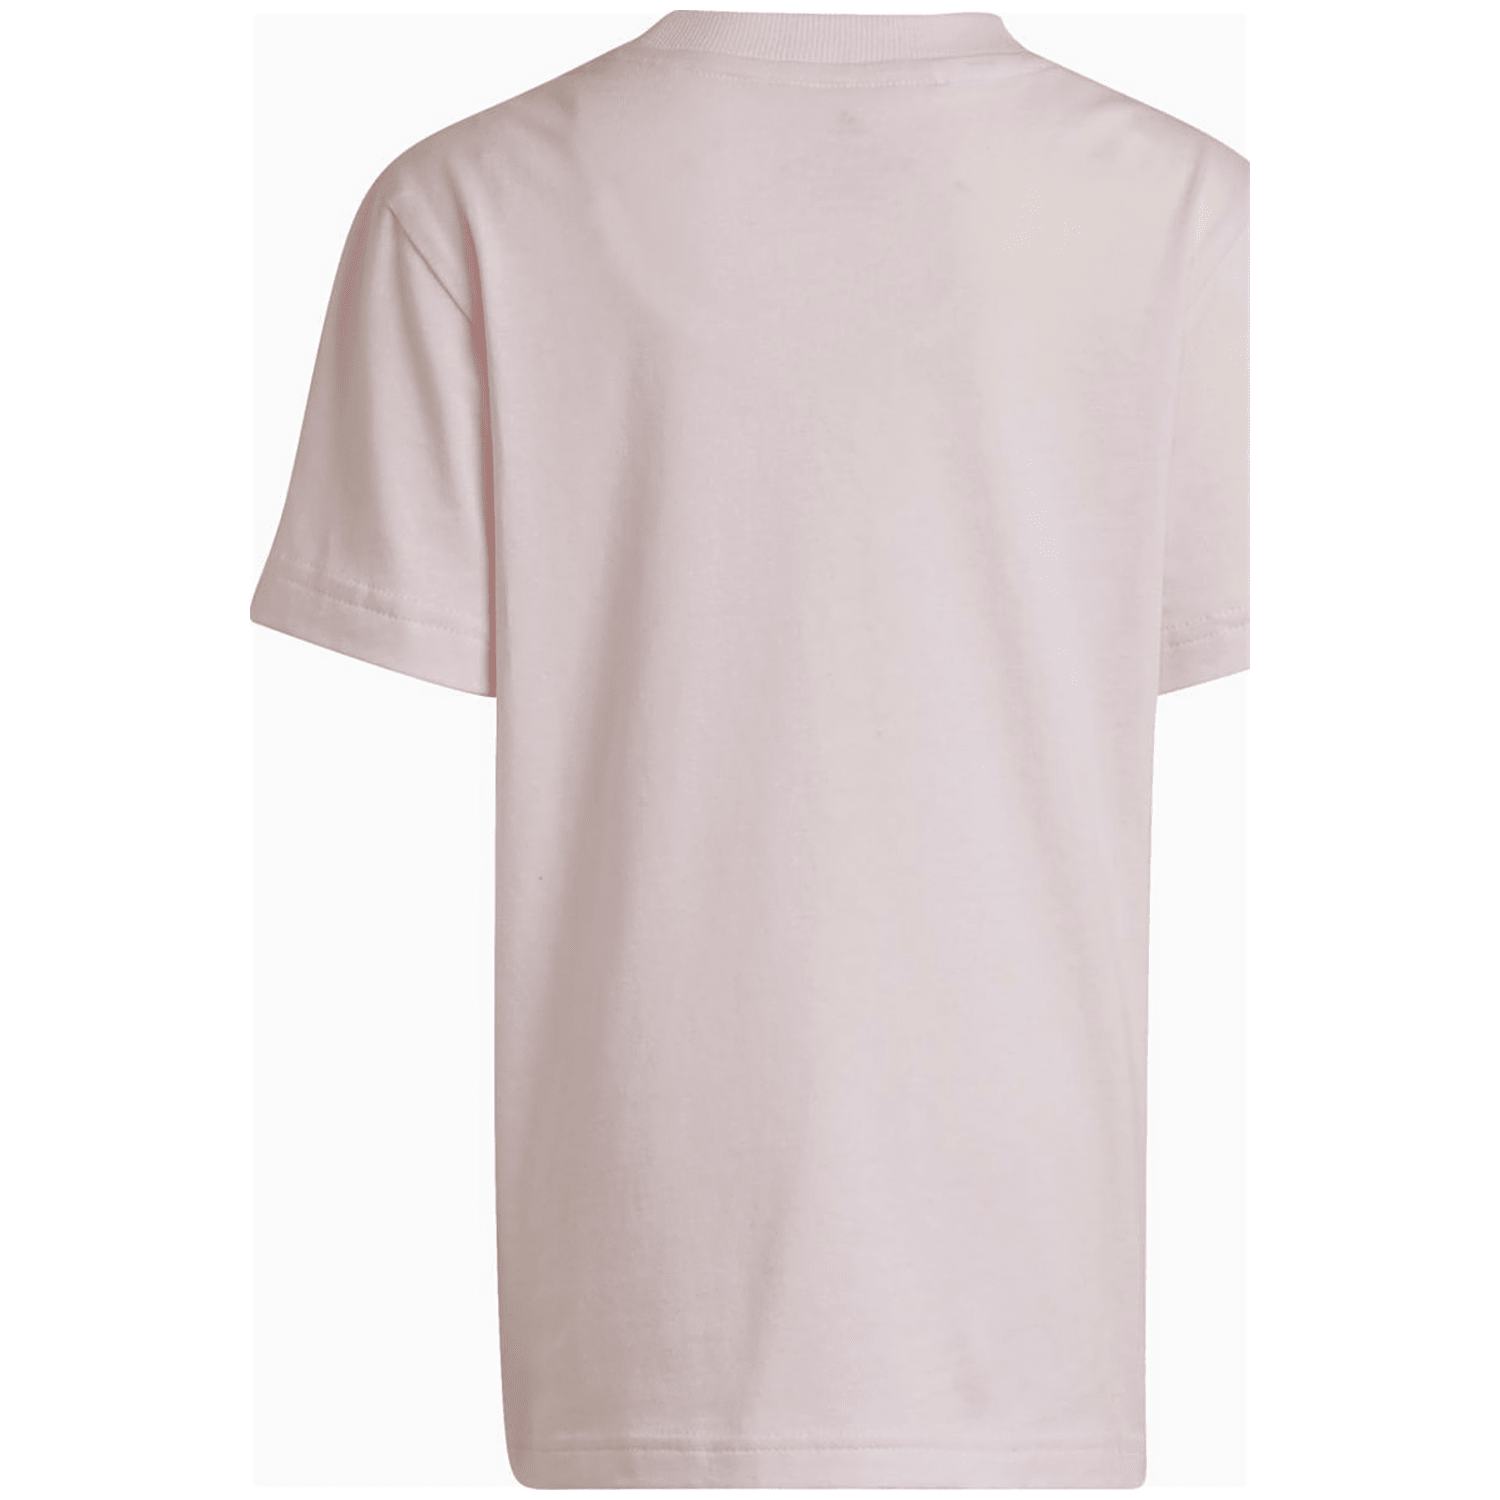 Adidas Essentials 3-Streifen T-Shirt Kinder